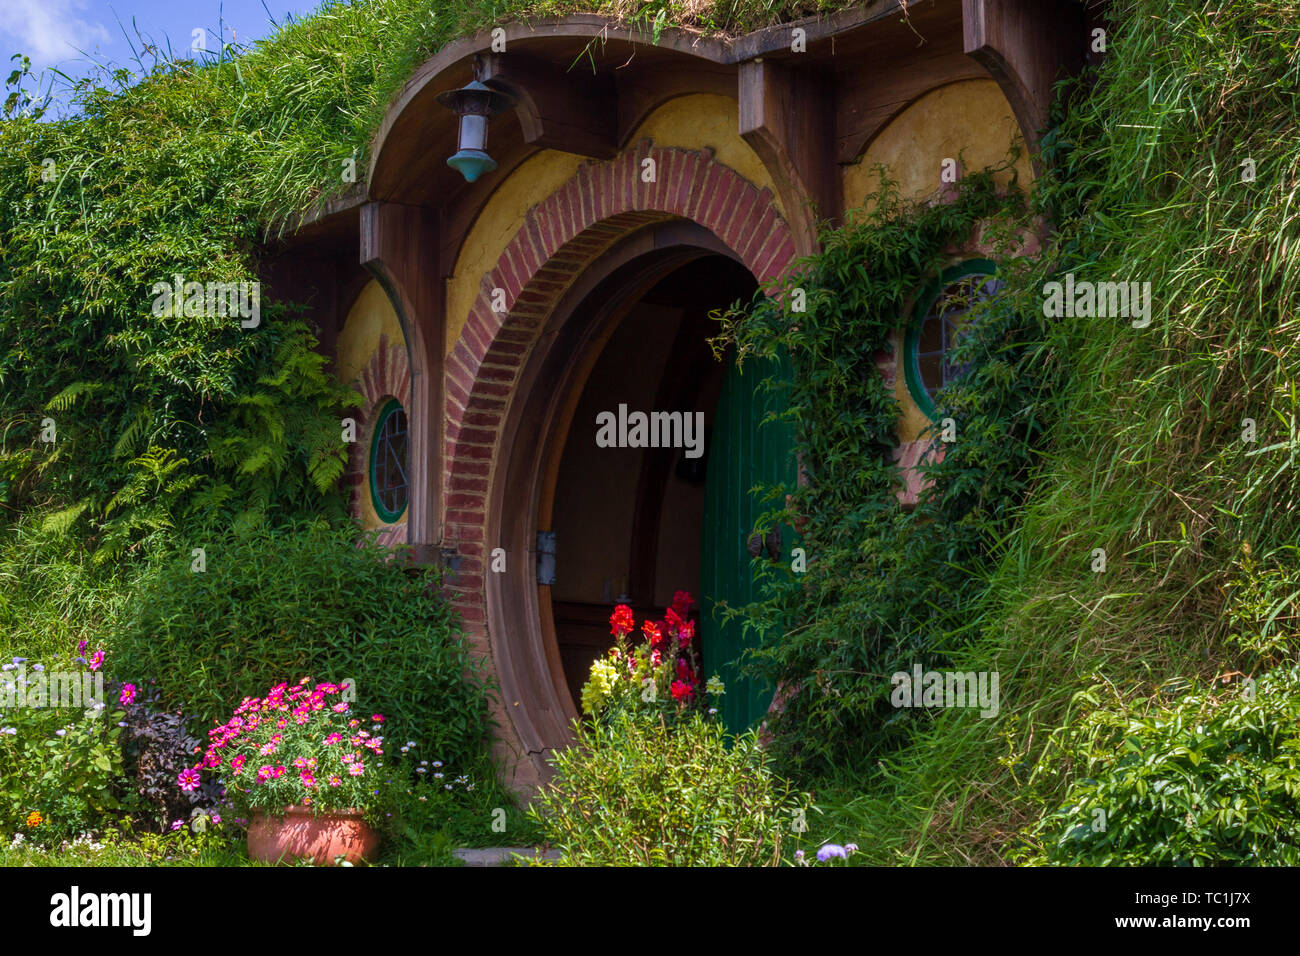 Hobbit bilbon sacquet home et jardin à hobbiton movie set, en Nouvelle-Zélande. Prises au cours de l'été Banque D'Images